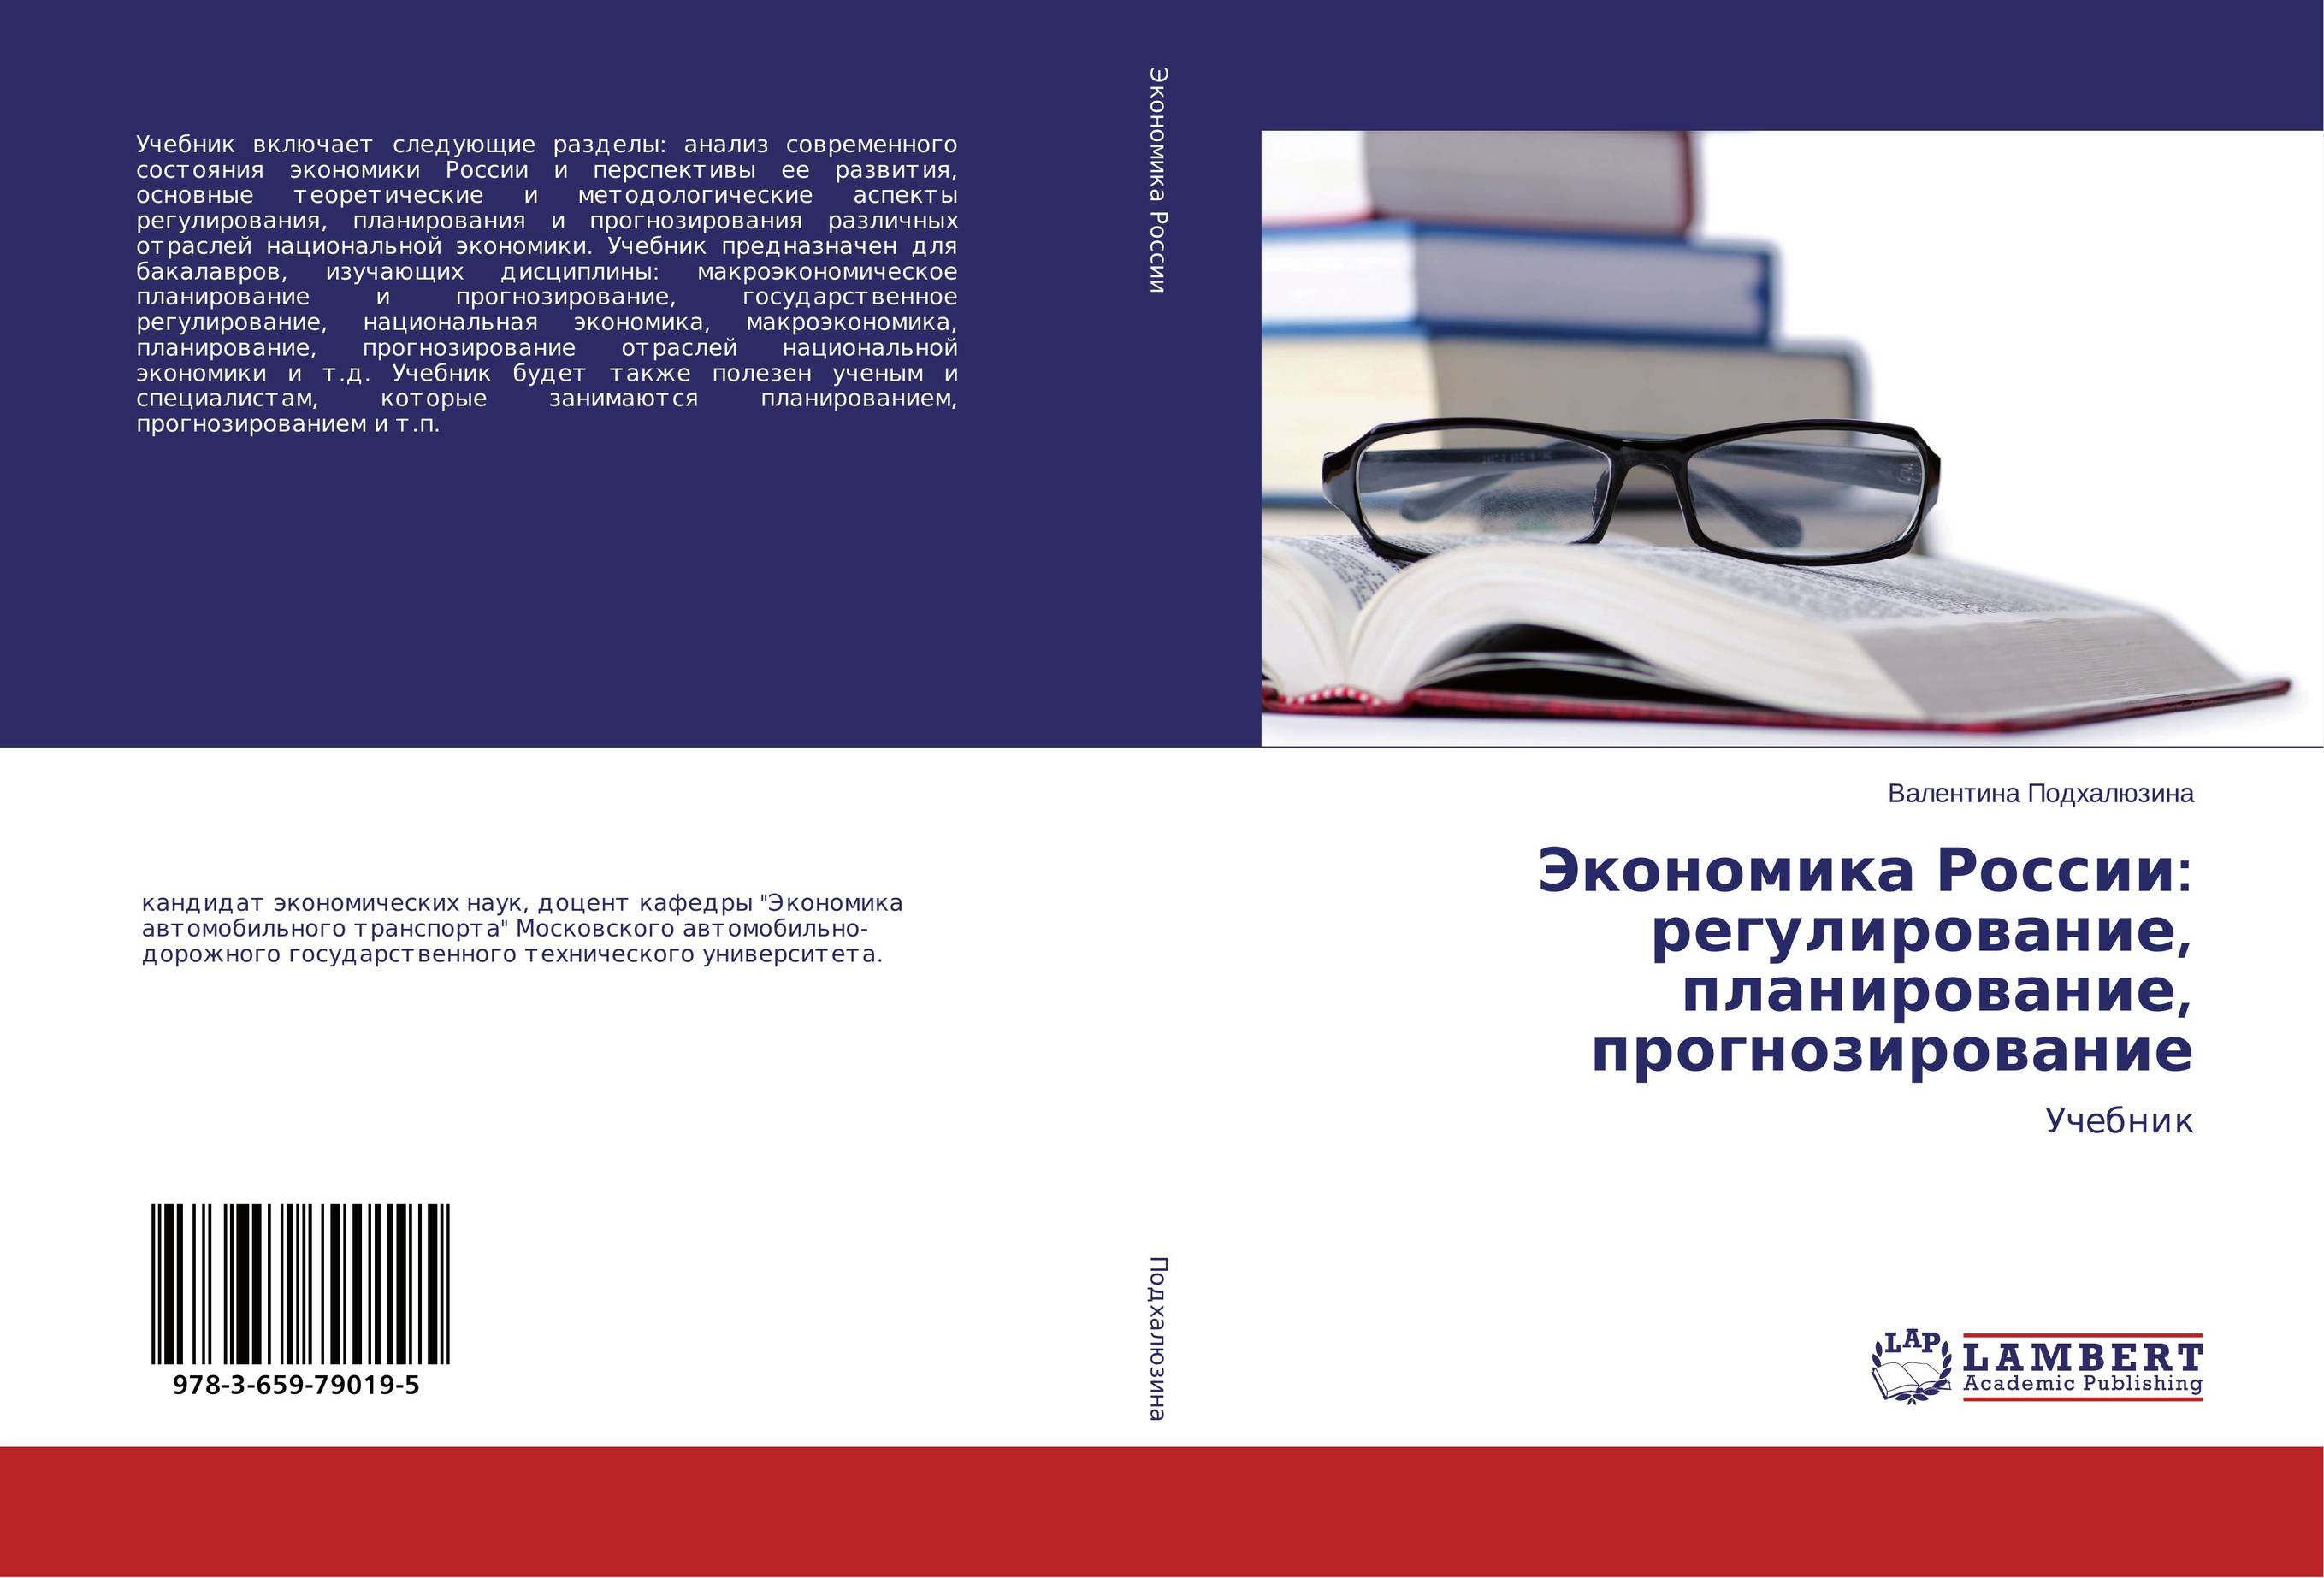 
        Экономика России: регулирование, планирование, прогнозирование. Учебник.
      